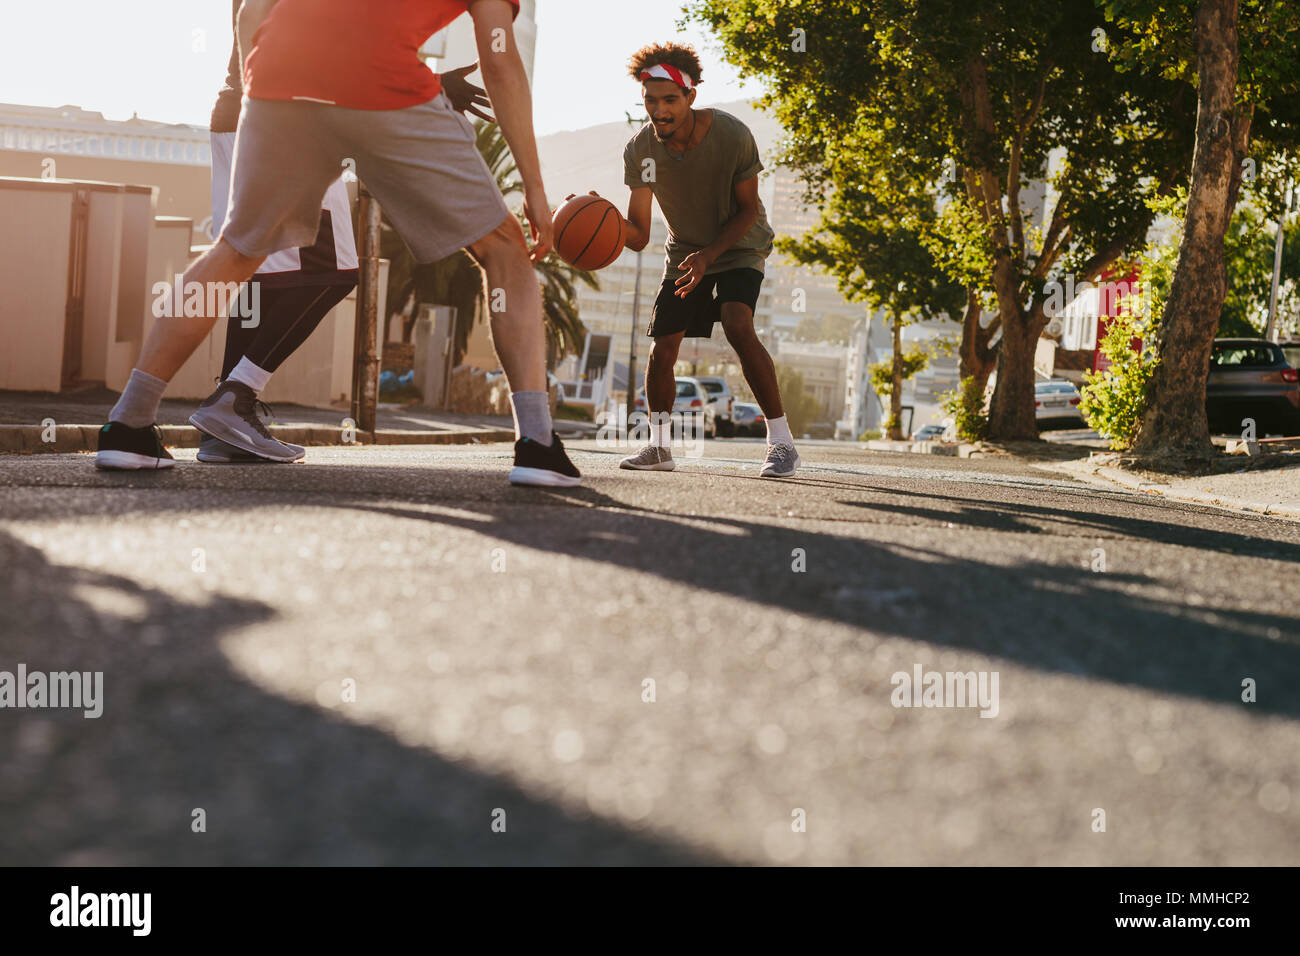 Gli uomini la riproduzione di gioco di basket in una giornata di sole su una strada vuota. Gli uomini praticano la pallacanestro talento nel dribbling sulla strada. Foto Stock